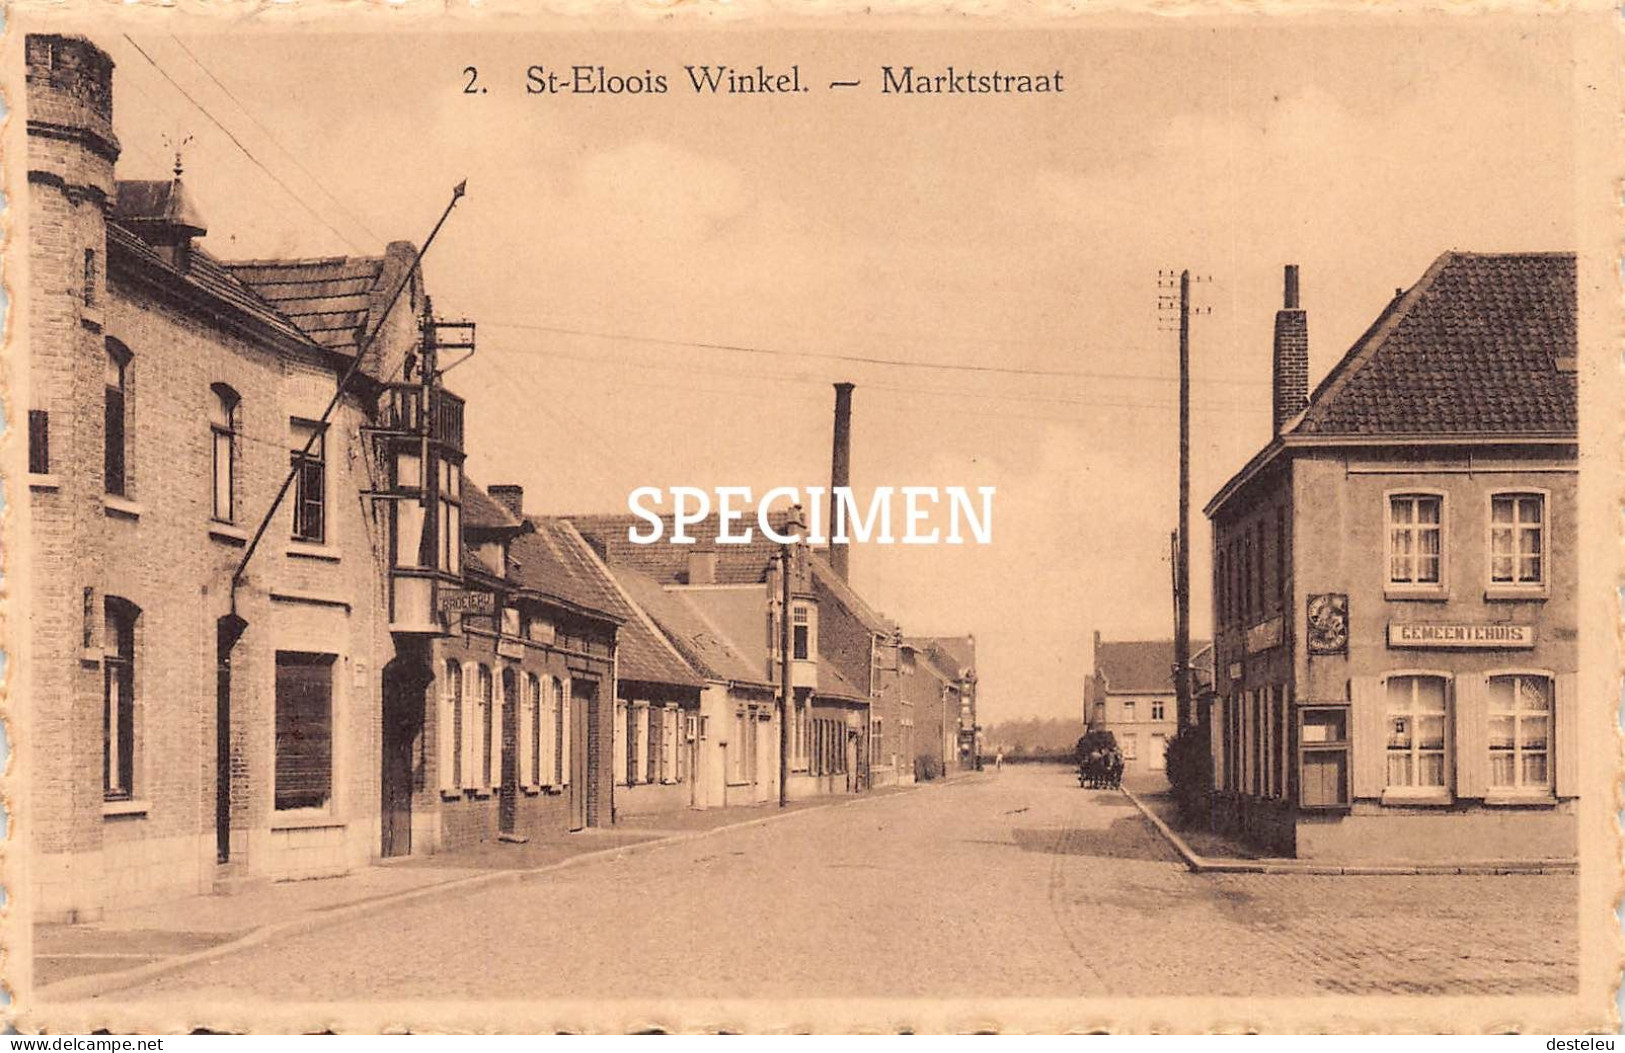 Marktstraat - St-Eloois Winkel - Ledegem